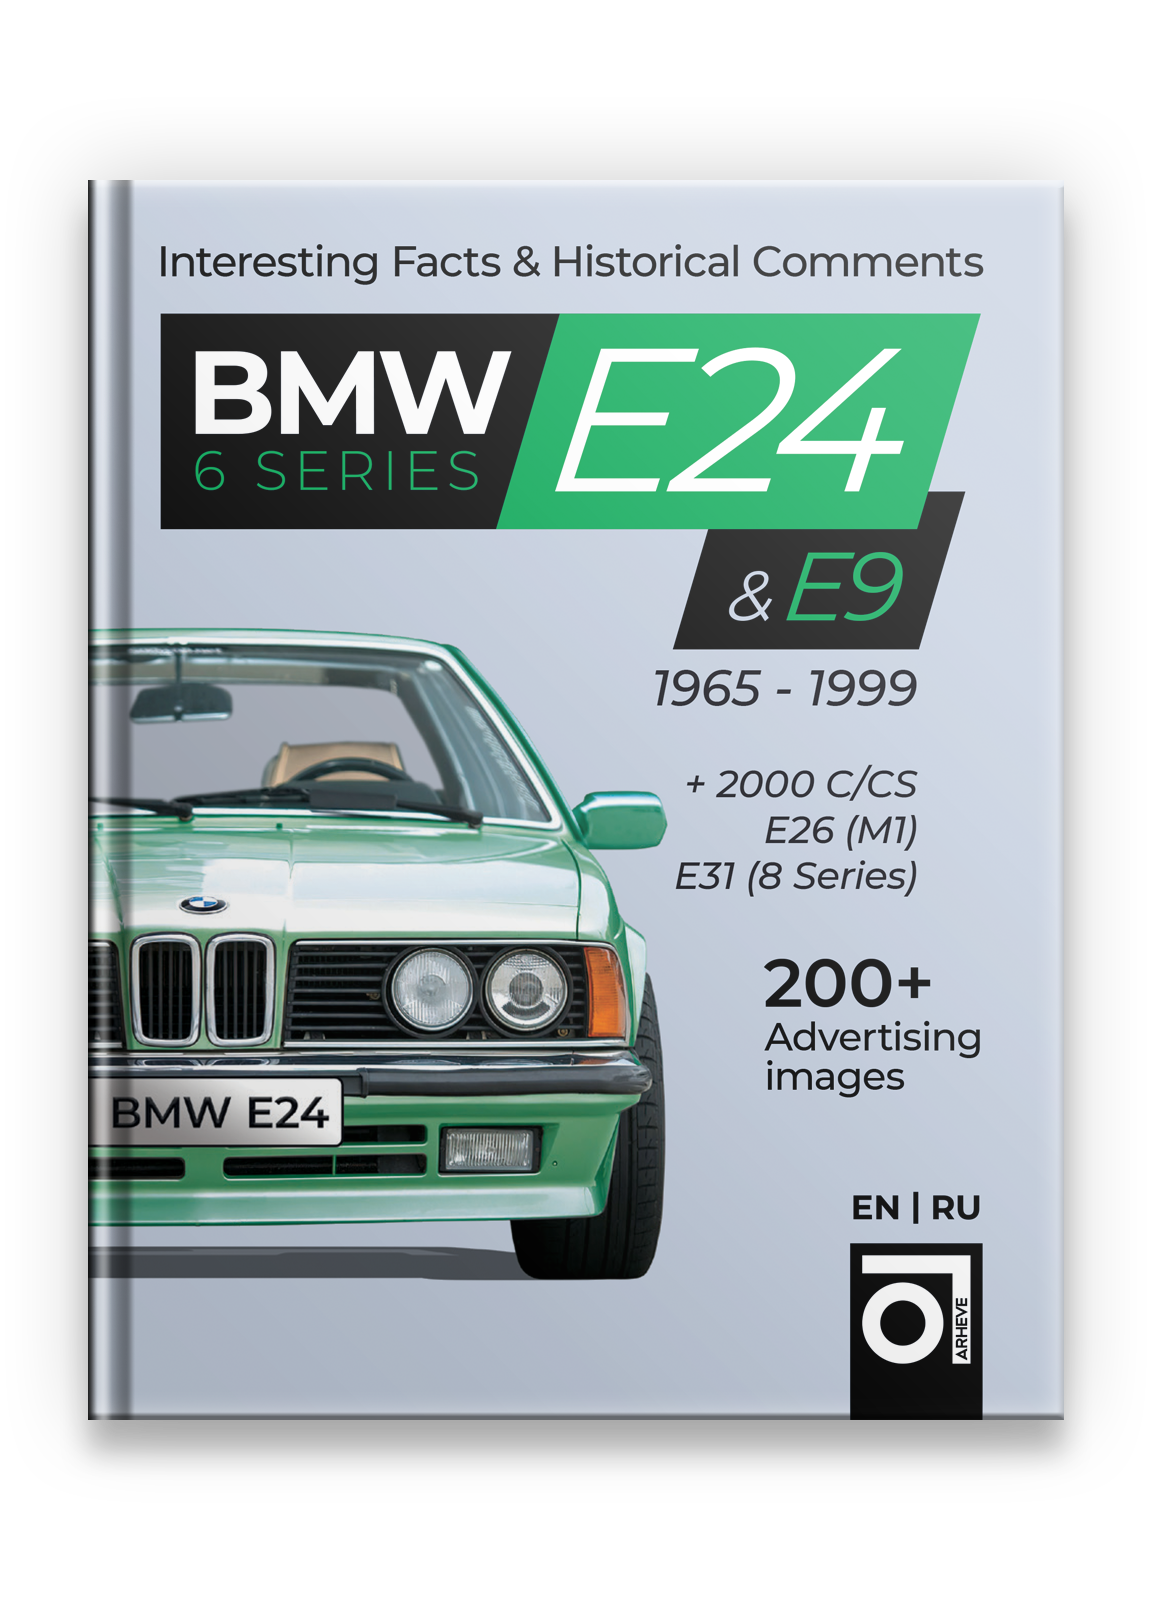 BMW E24 & E9 - Cars ARHEVE